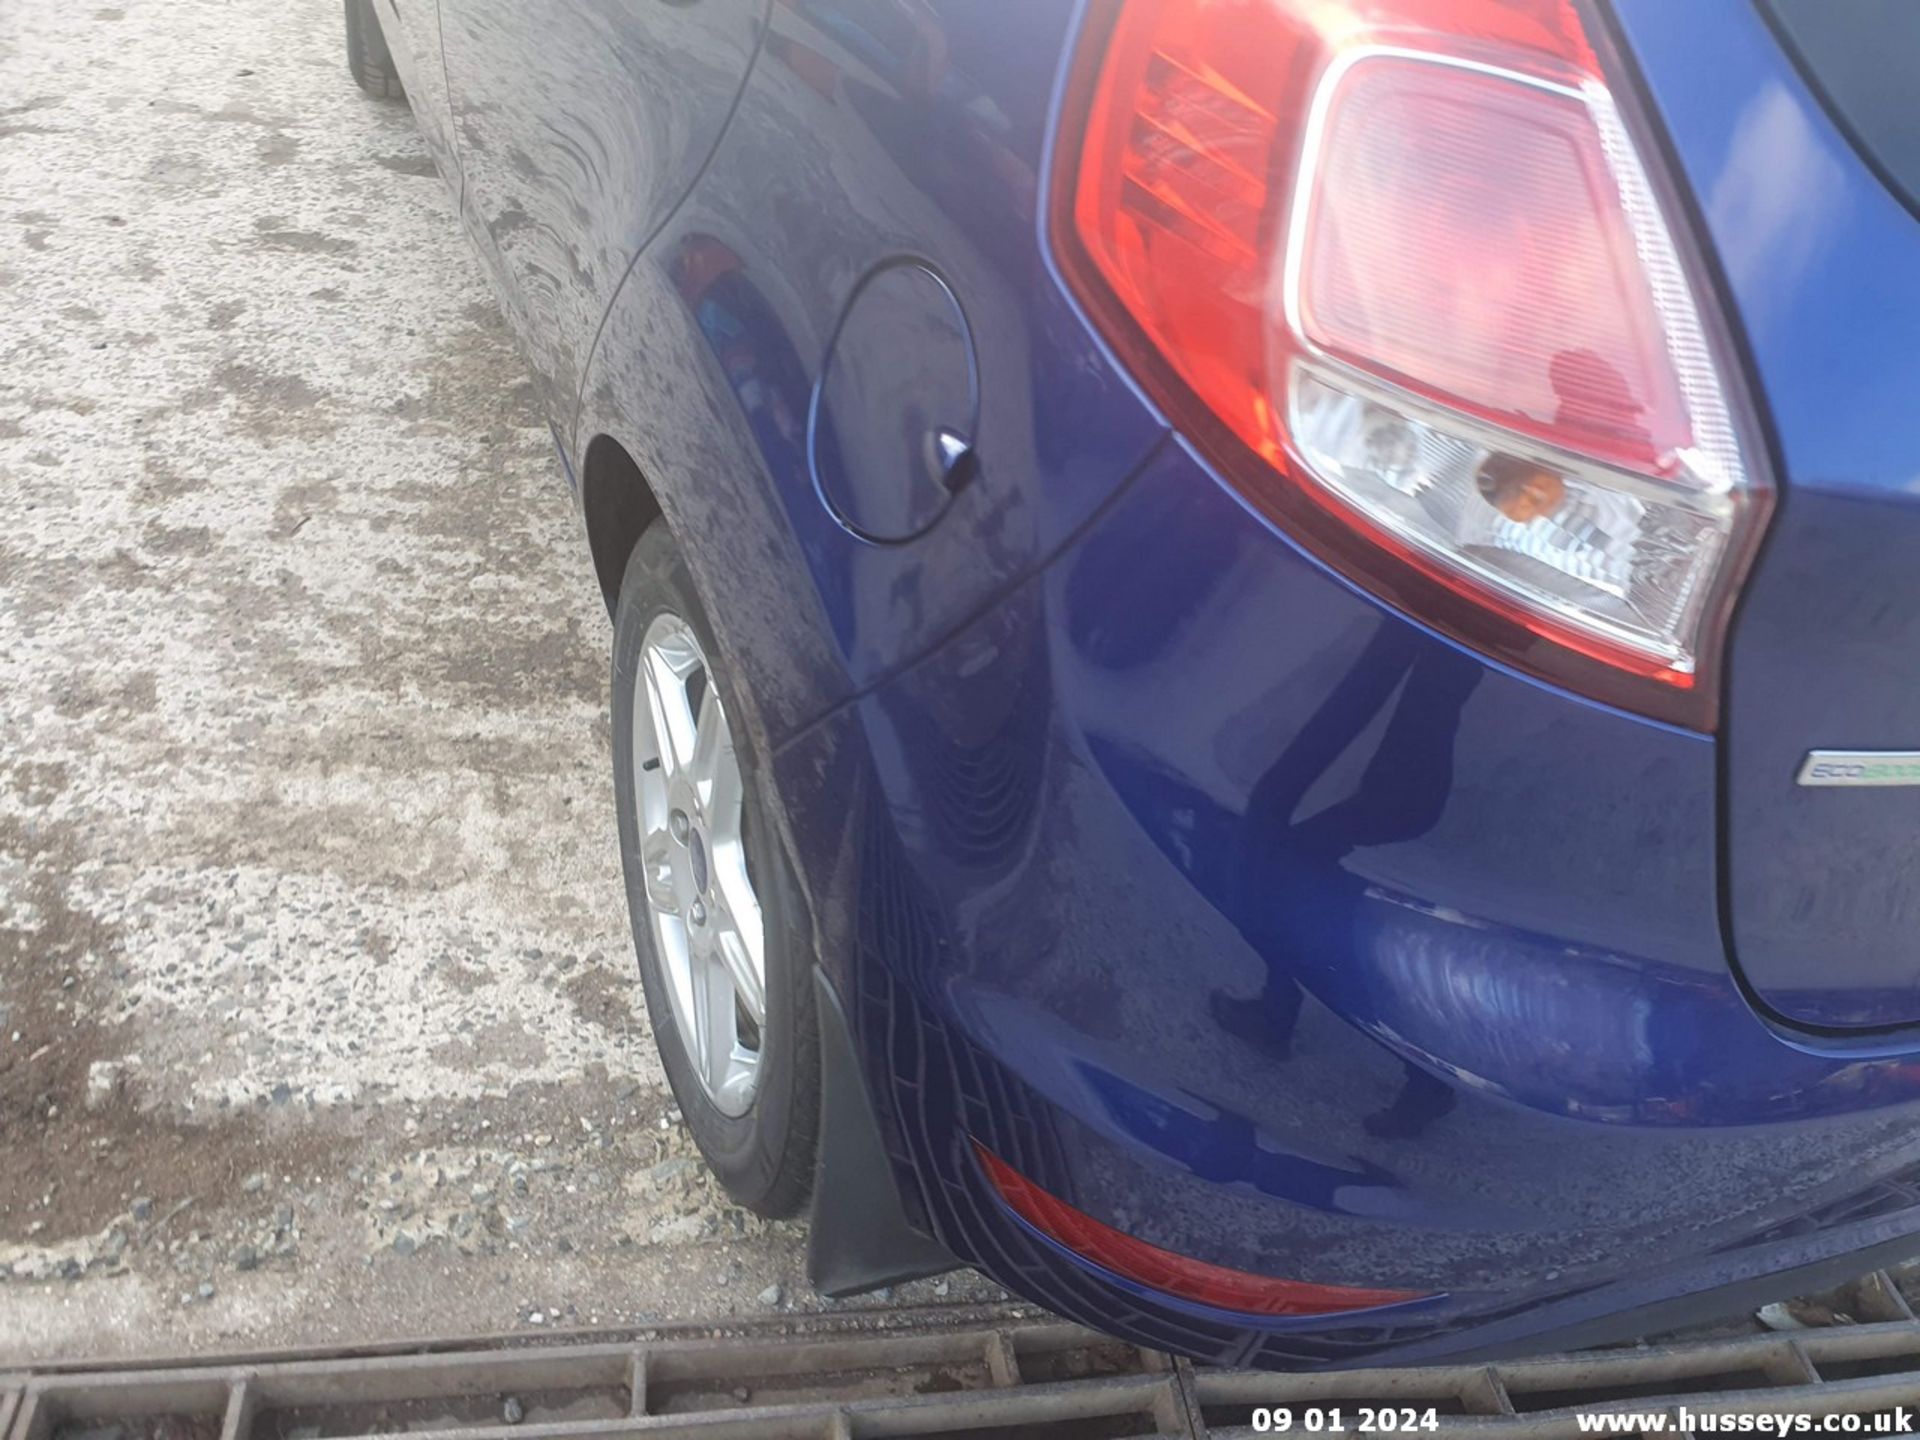 13/63 FORD FIESTA ZETEC - 998cc 5dr Hatchback (Blue, 52k) - Image 8 of 42